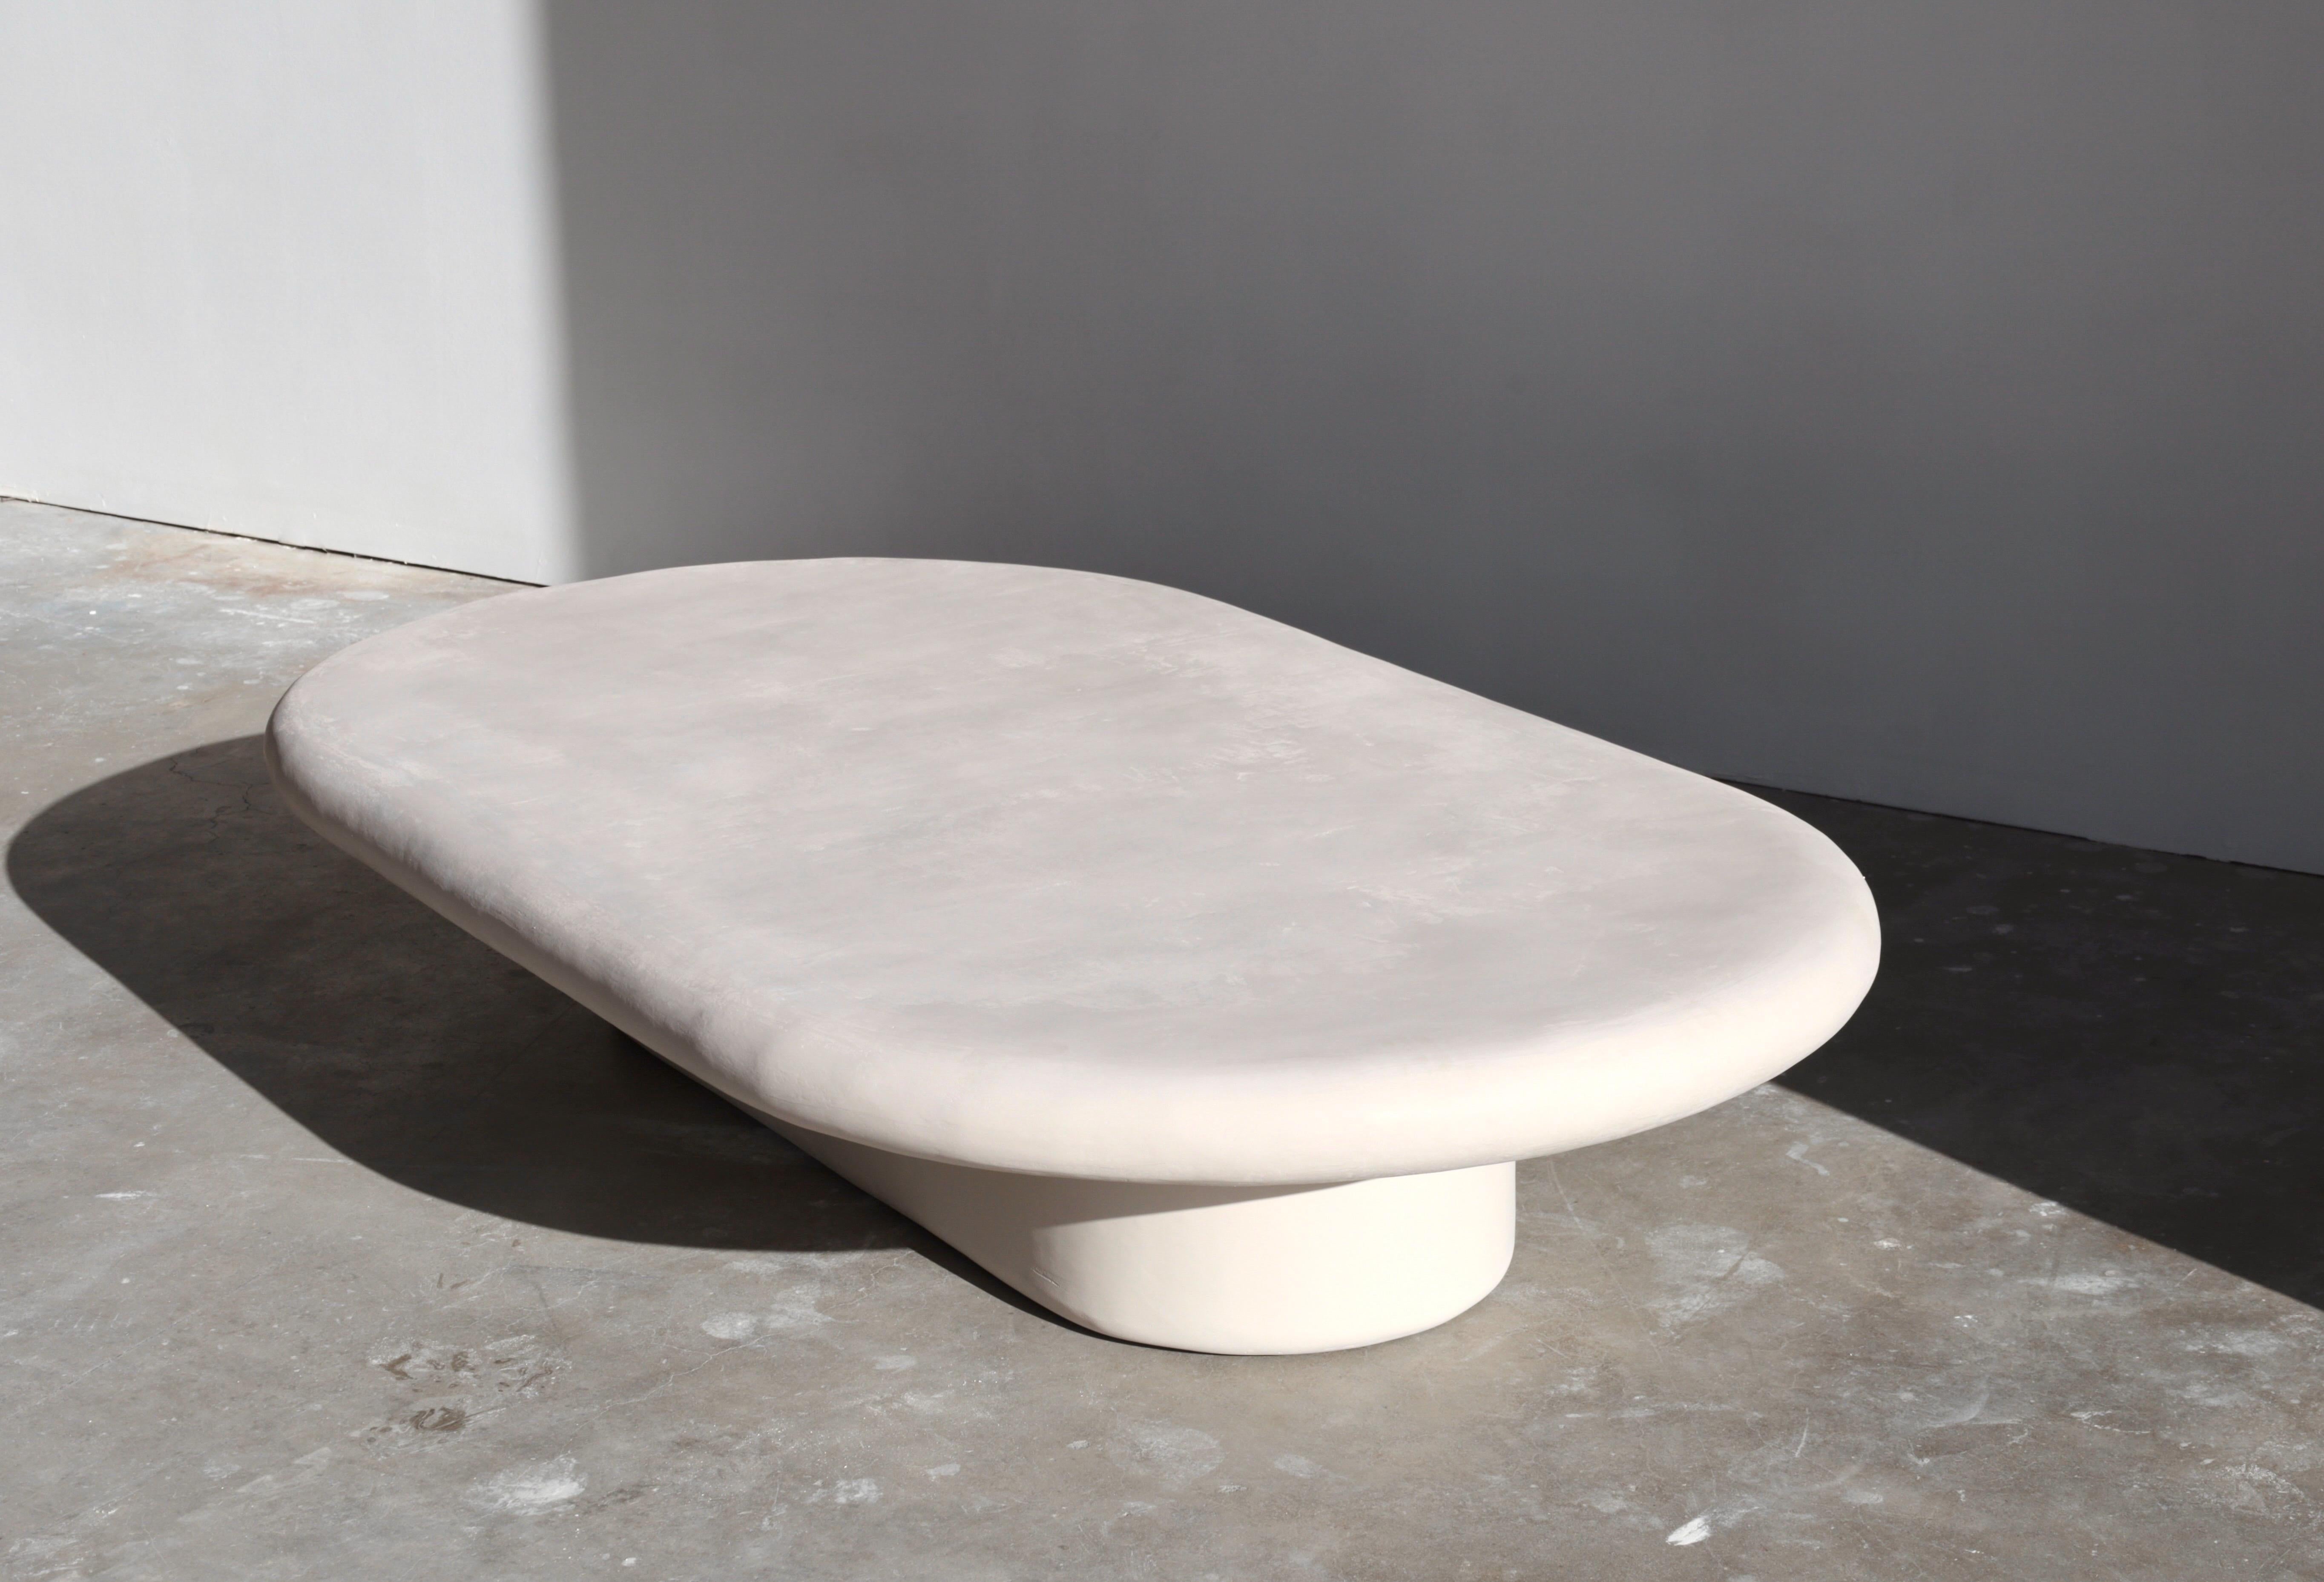 notre table la plus populaire, simple et sculpturale, en couleur gobi clair.

Chaque pièce de öken house Studio est fabriquée à la main et sur commande par une petite équipe d'artisans du plâtre et nous essayons de faire appel à des fournisseurs